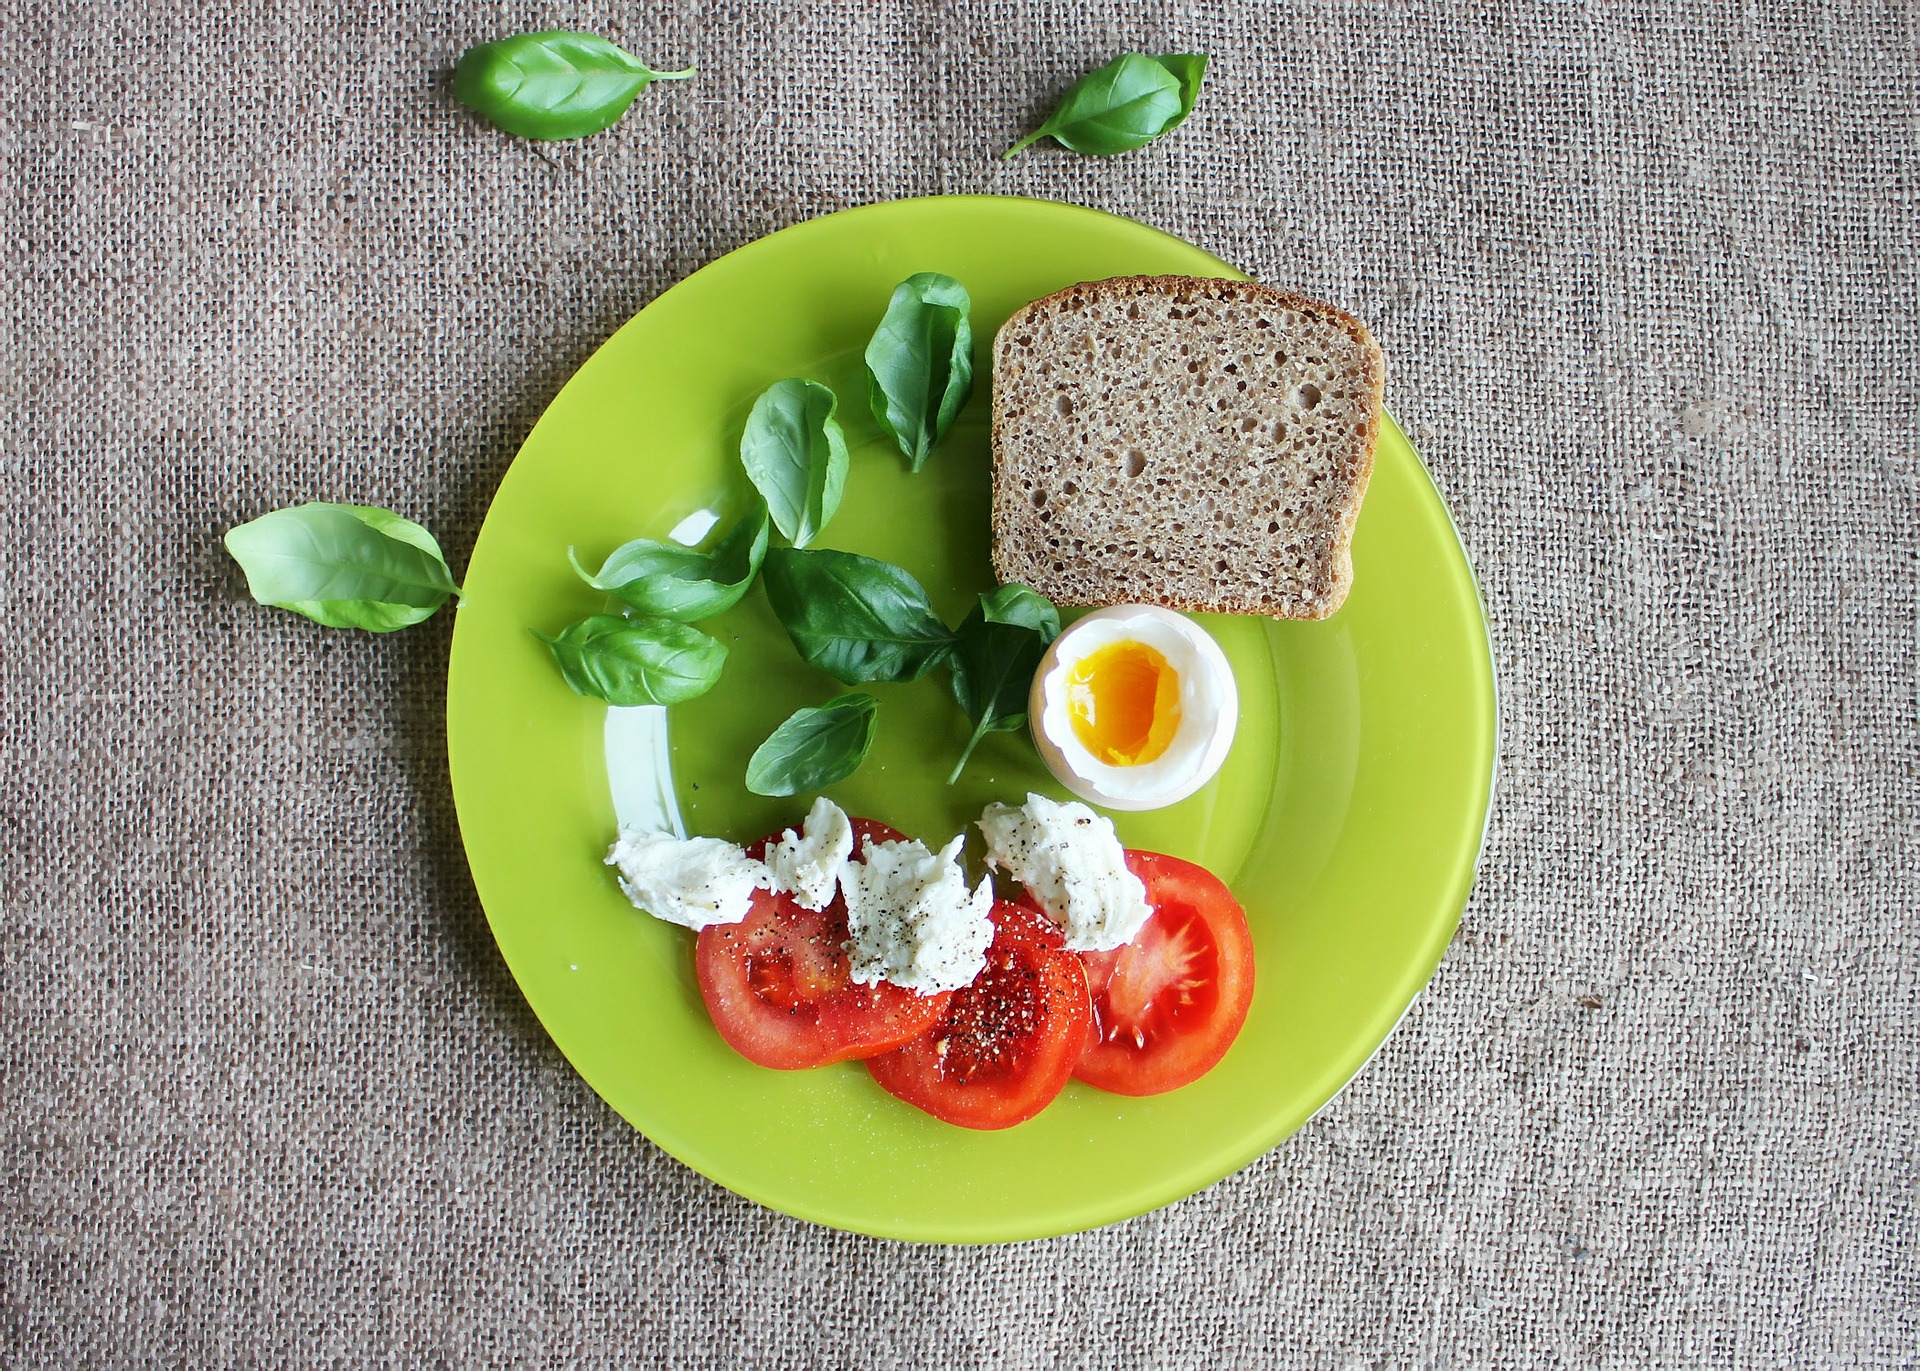 Prato saudável com ovo, tomate, folhas e pão integral. Imagem ilustrativa do texto ideias para empreender.